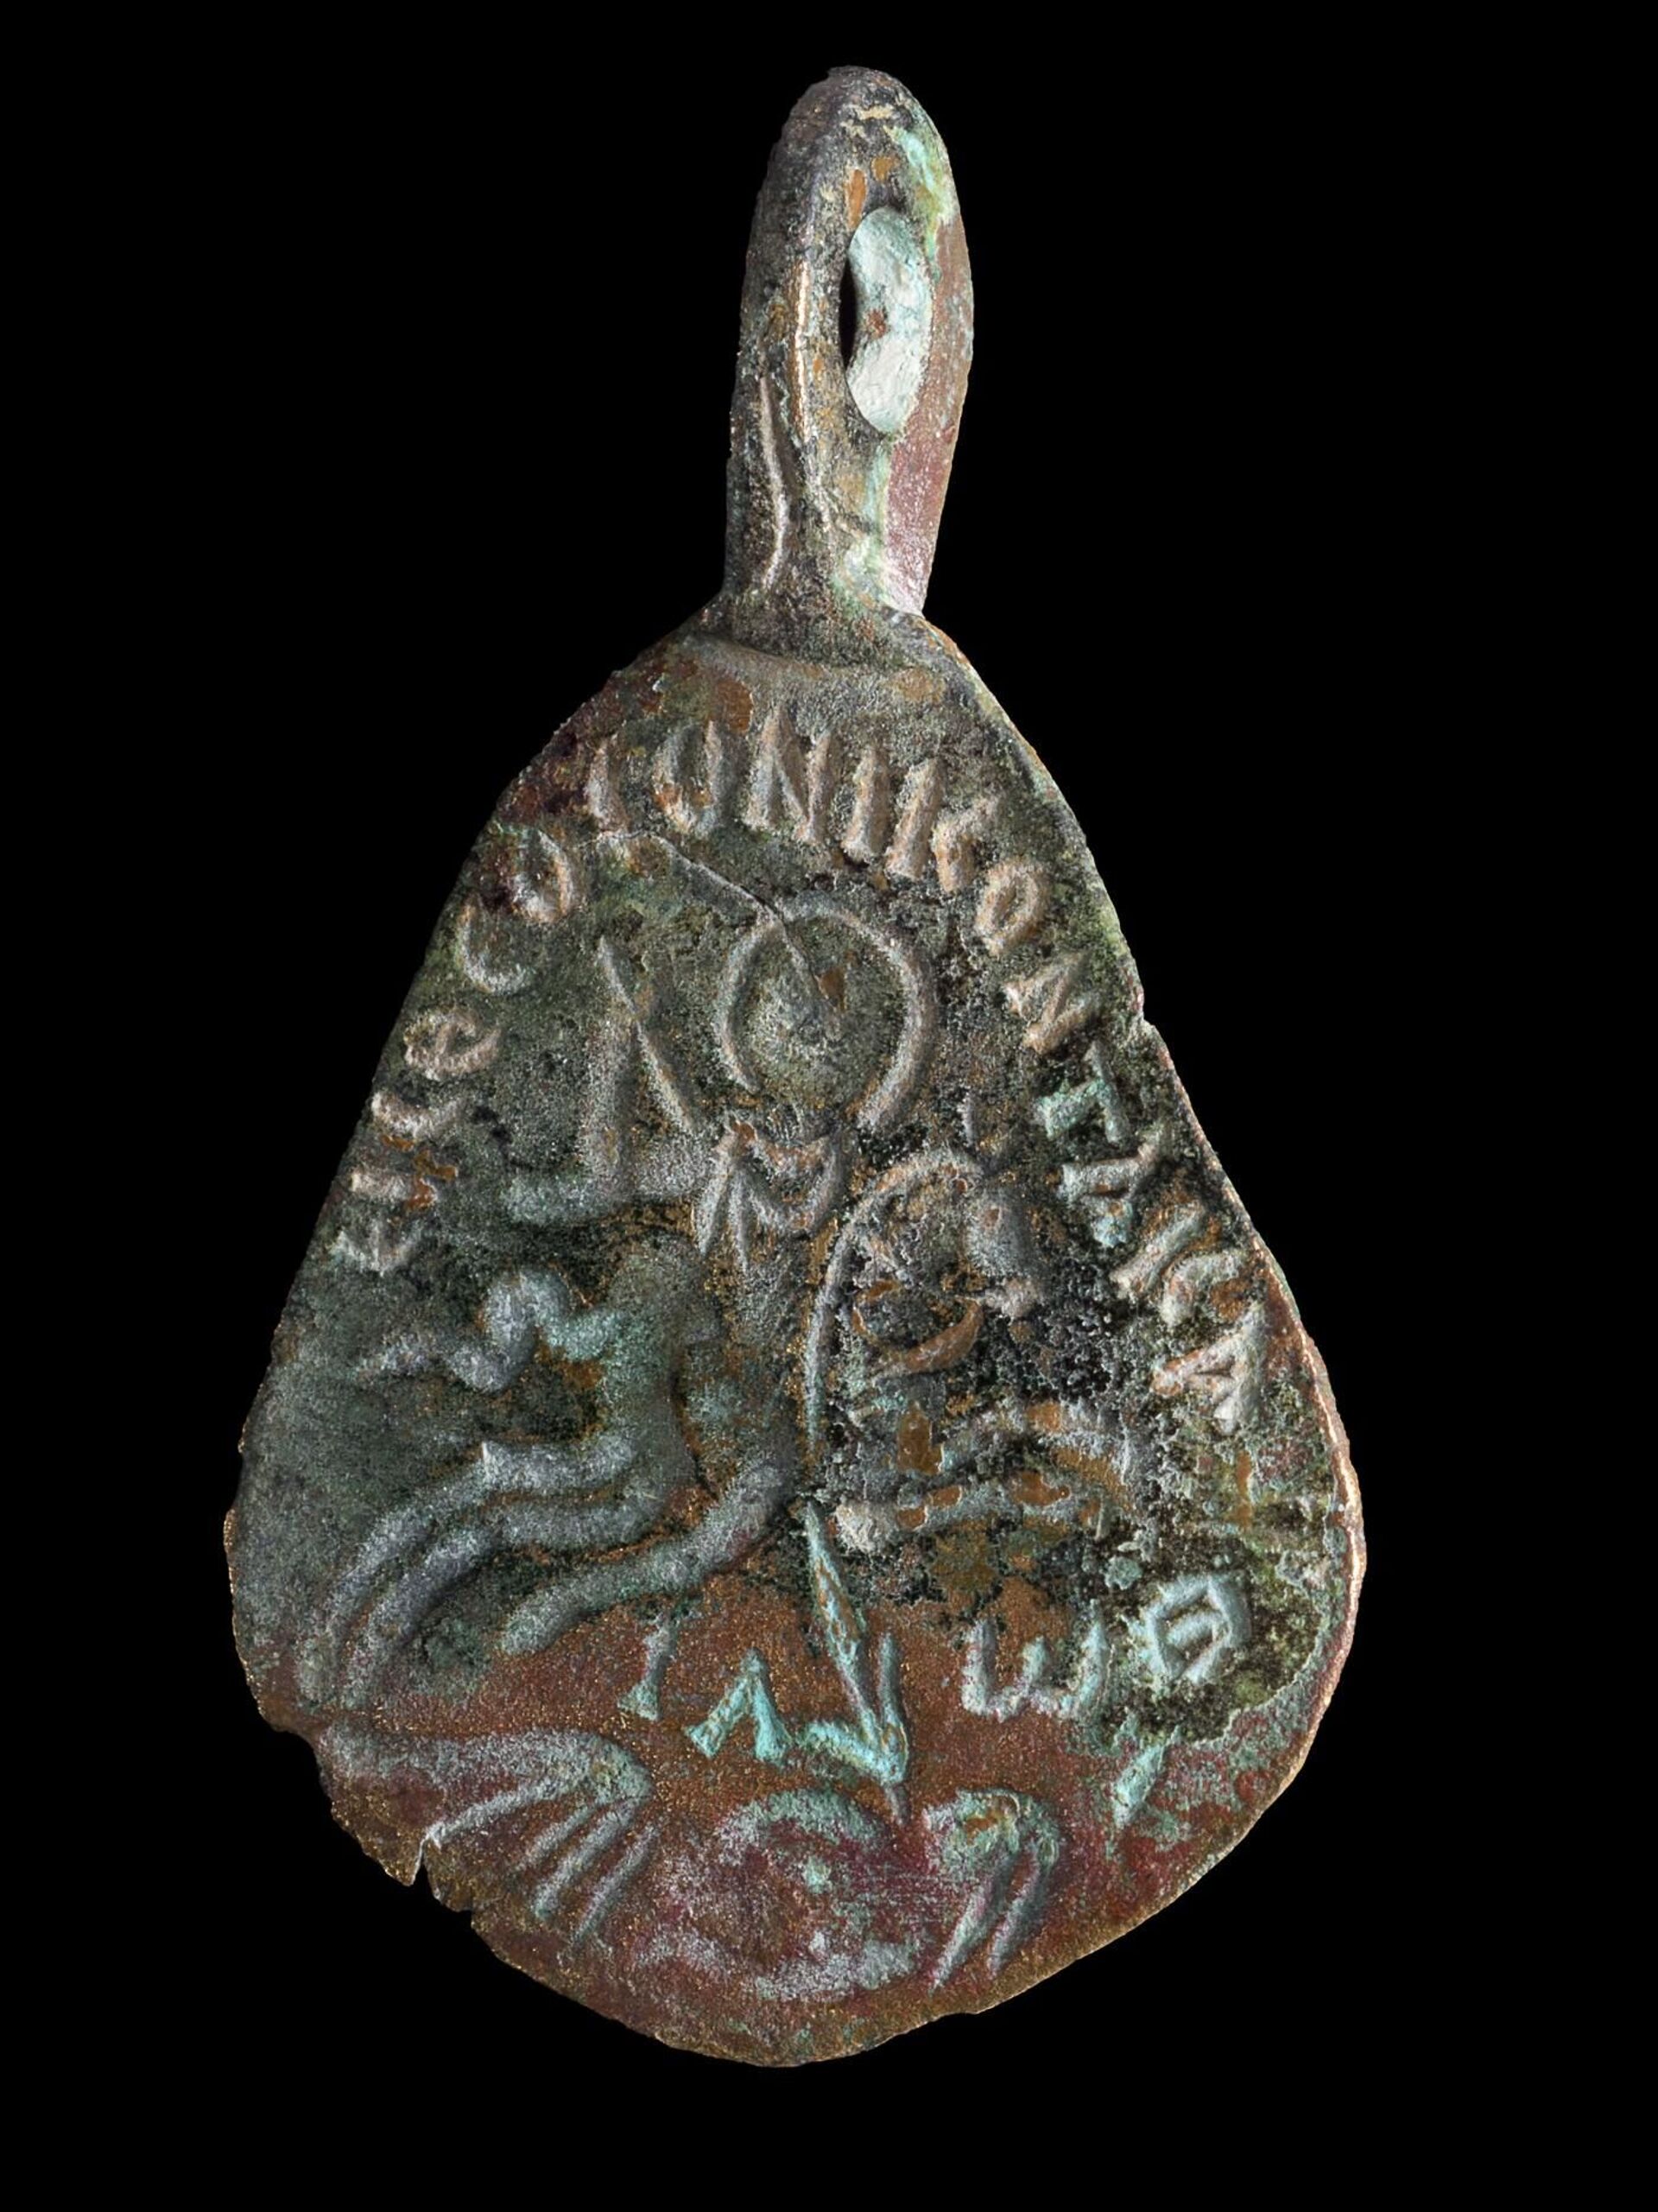 FOTOS revelam amuleto de 1.500 anos que protegia mulheres e crianças em Israel - Sputnik Brasil, 1920, 02.06.2021